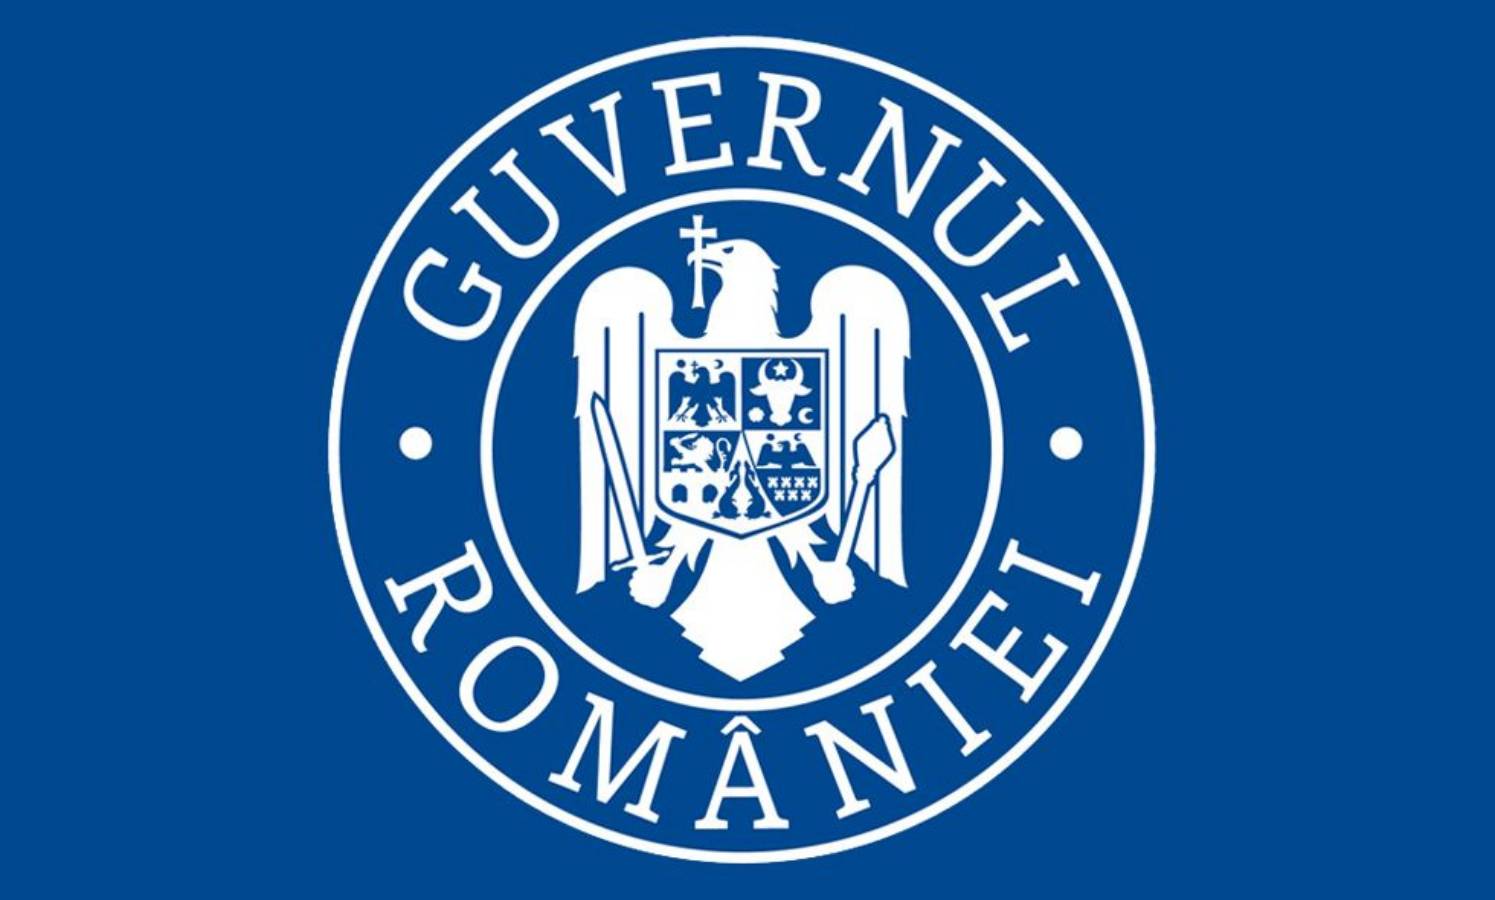 Den rumänska regeringen utfärdade en varning till klubbar och barer